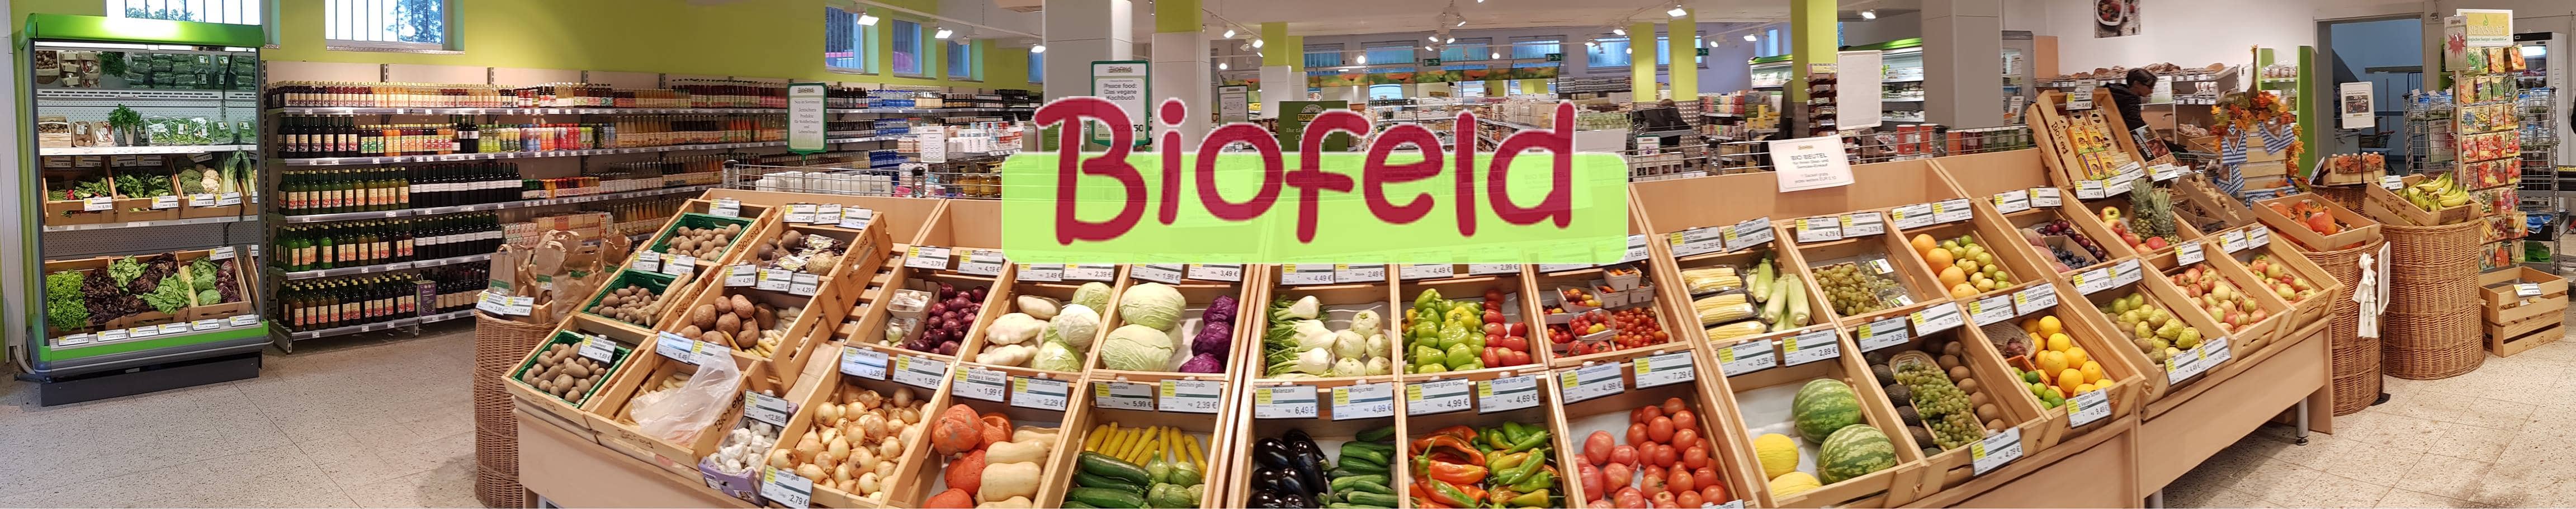 Biomarkt, Bioeinkauf, Bio, Biobrot, Biokorn, 9020 Klagenfurt am Wörthersee